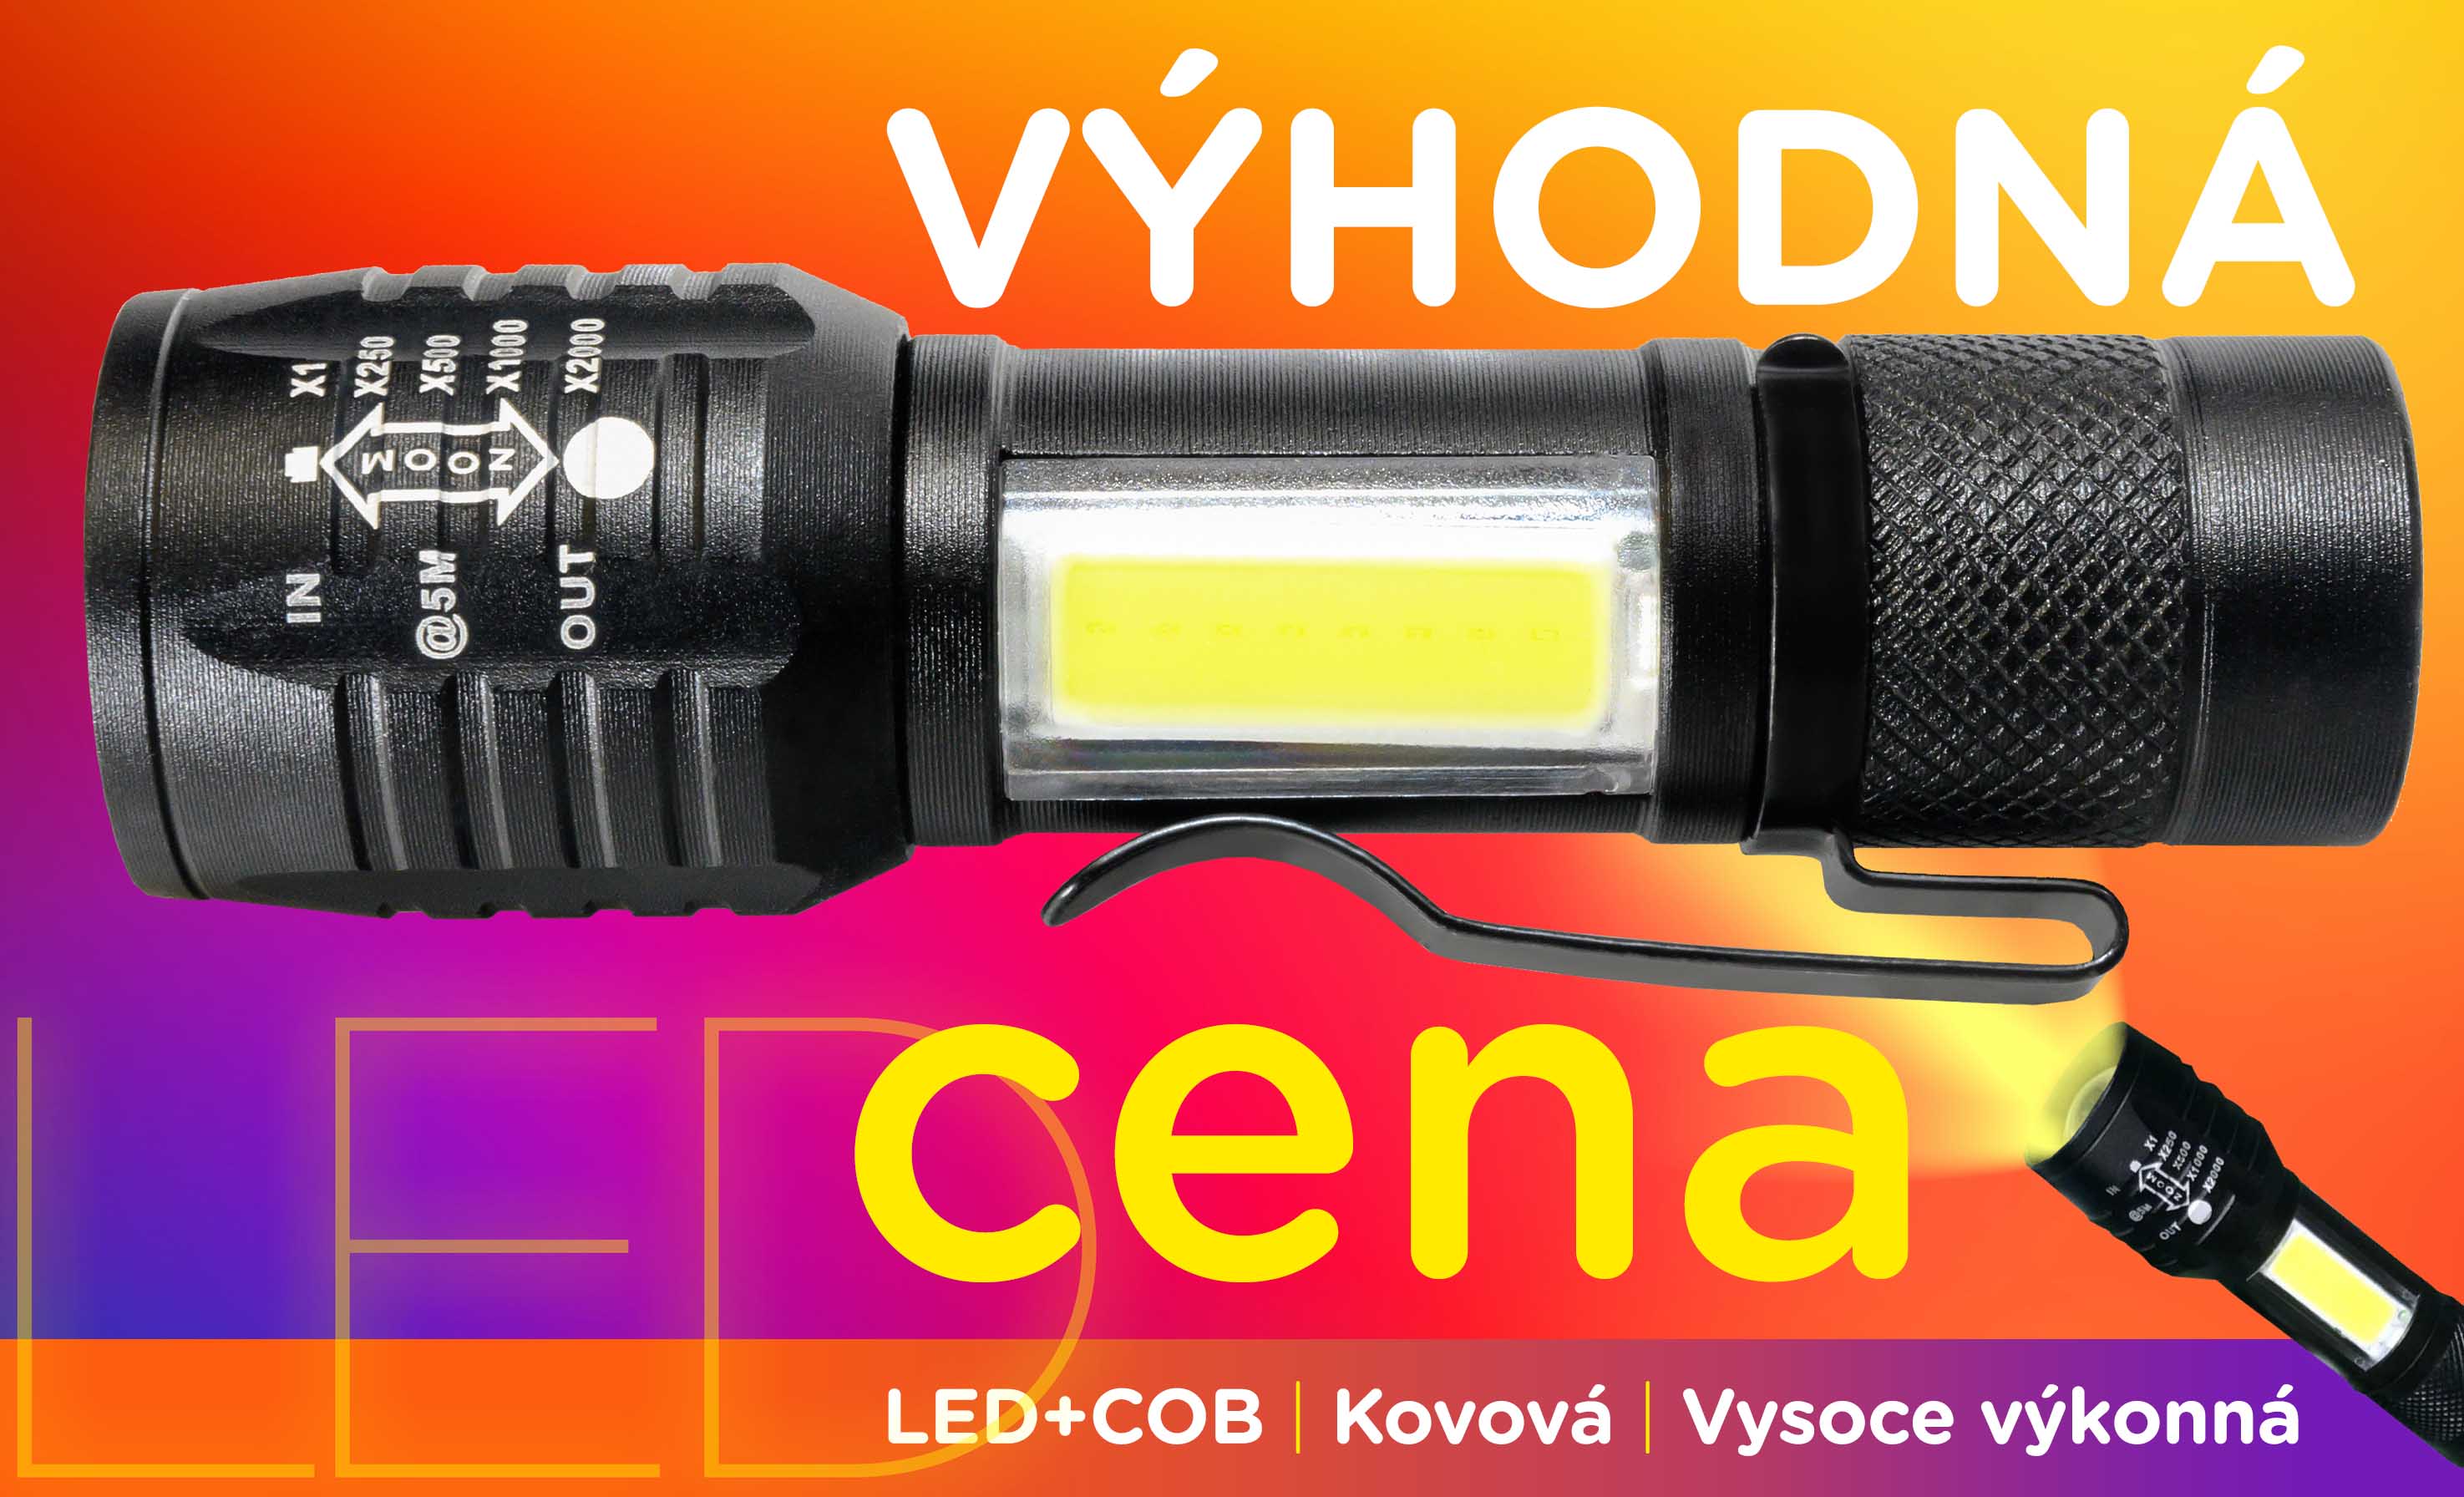 LED+COB LED svítilna za výhodnou cenu